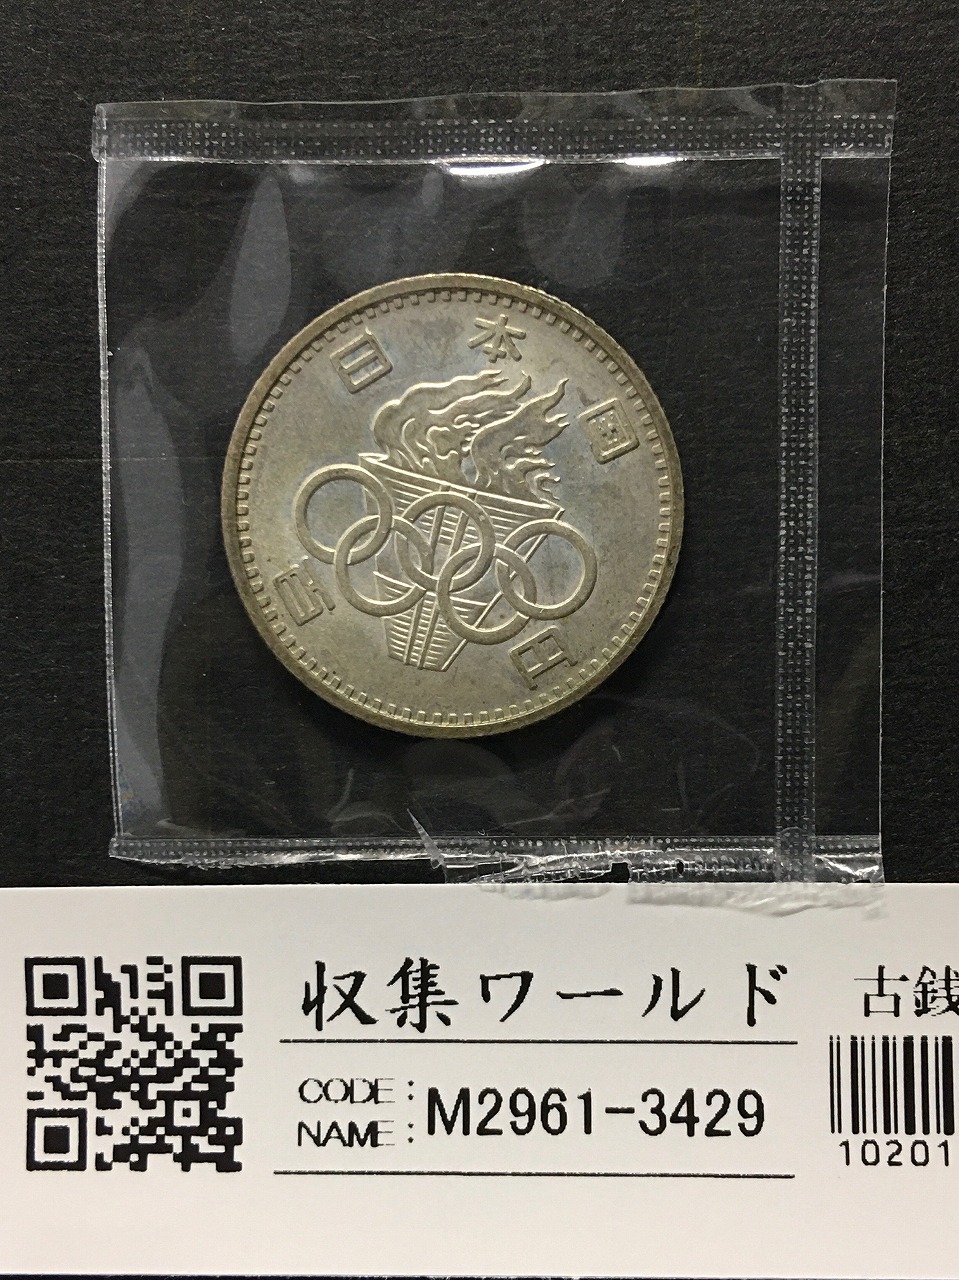 1964年 東京オリンピック記念 100円銀貨 (ト-ン) 未使用-3429